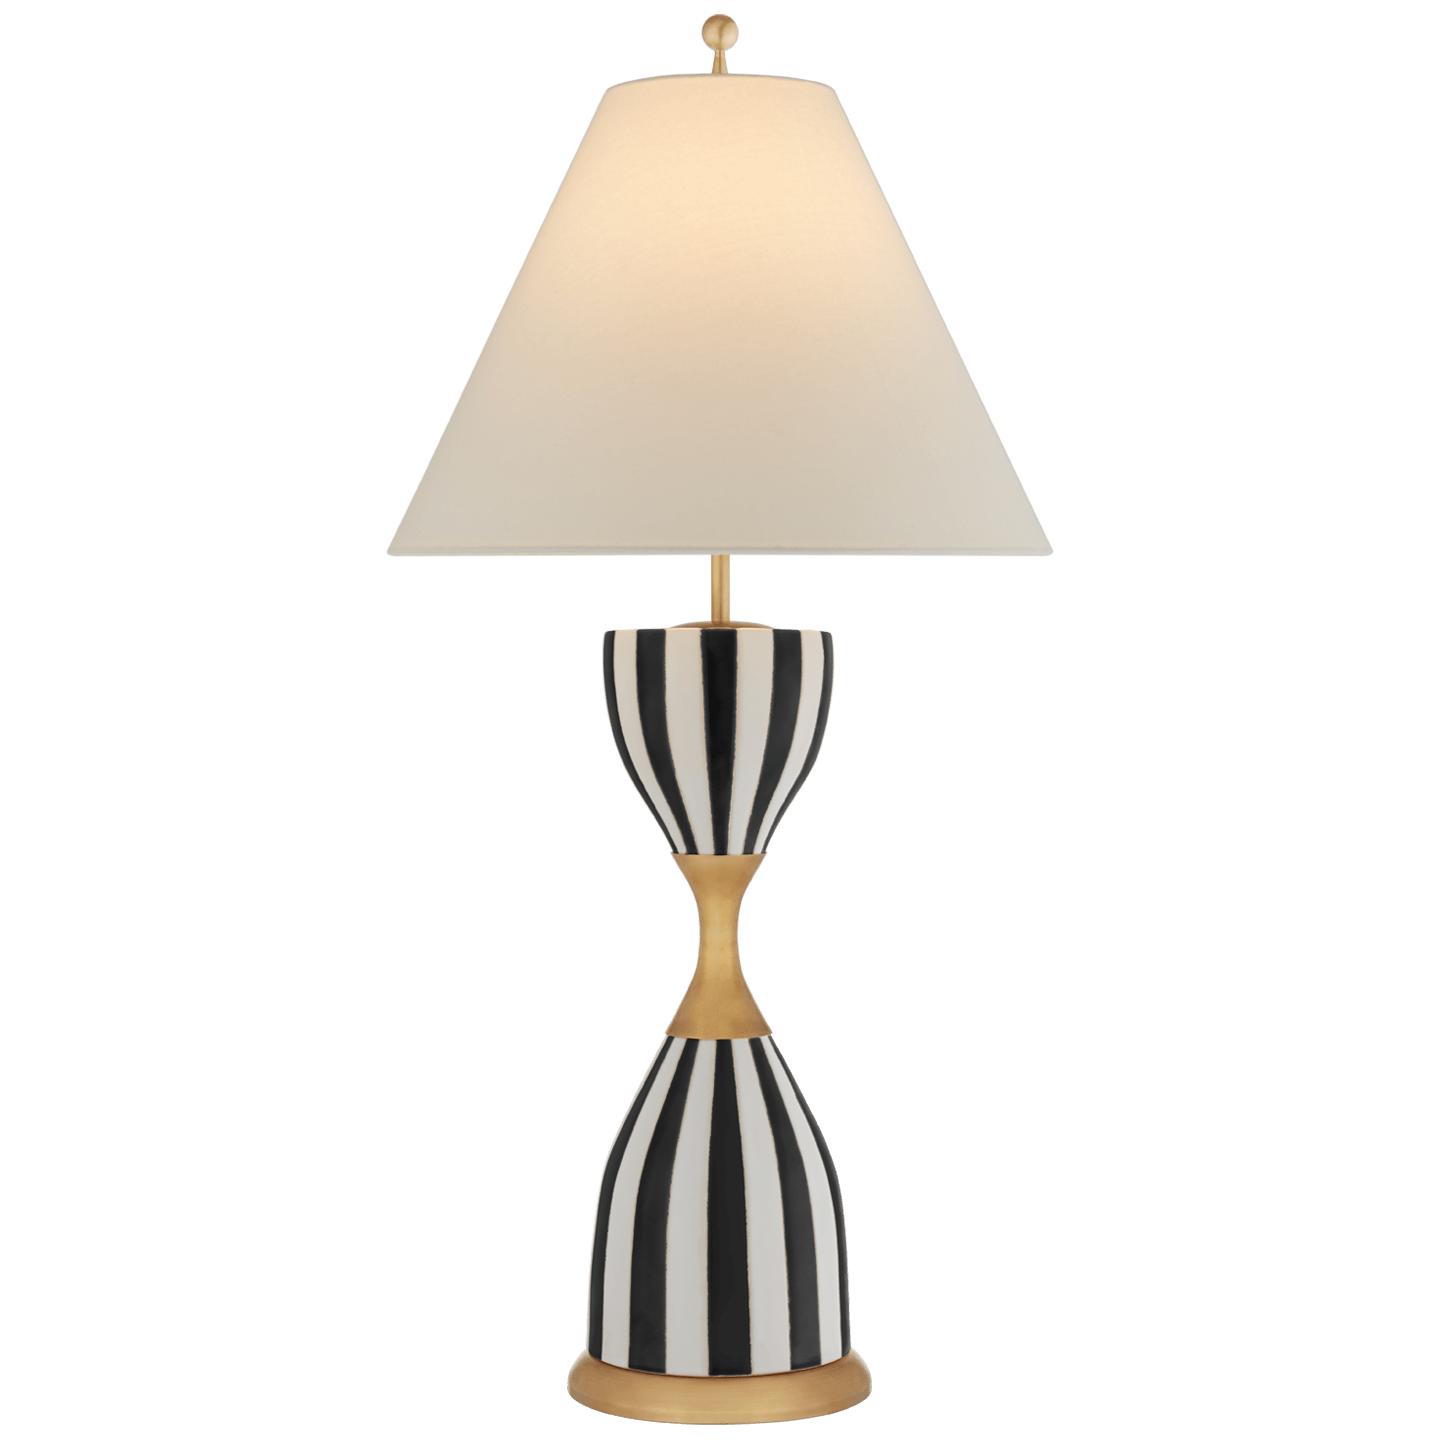 Купить Настольная лампа Tilly Large Table Lamp в интернет-магазине roooms.ru